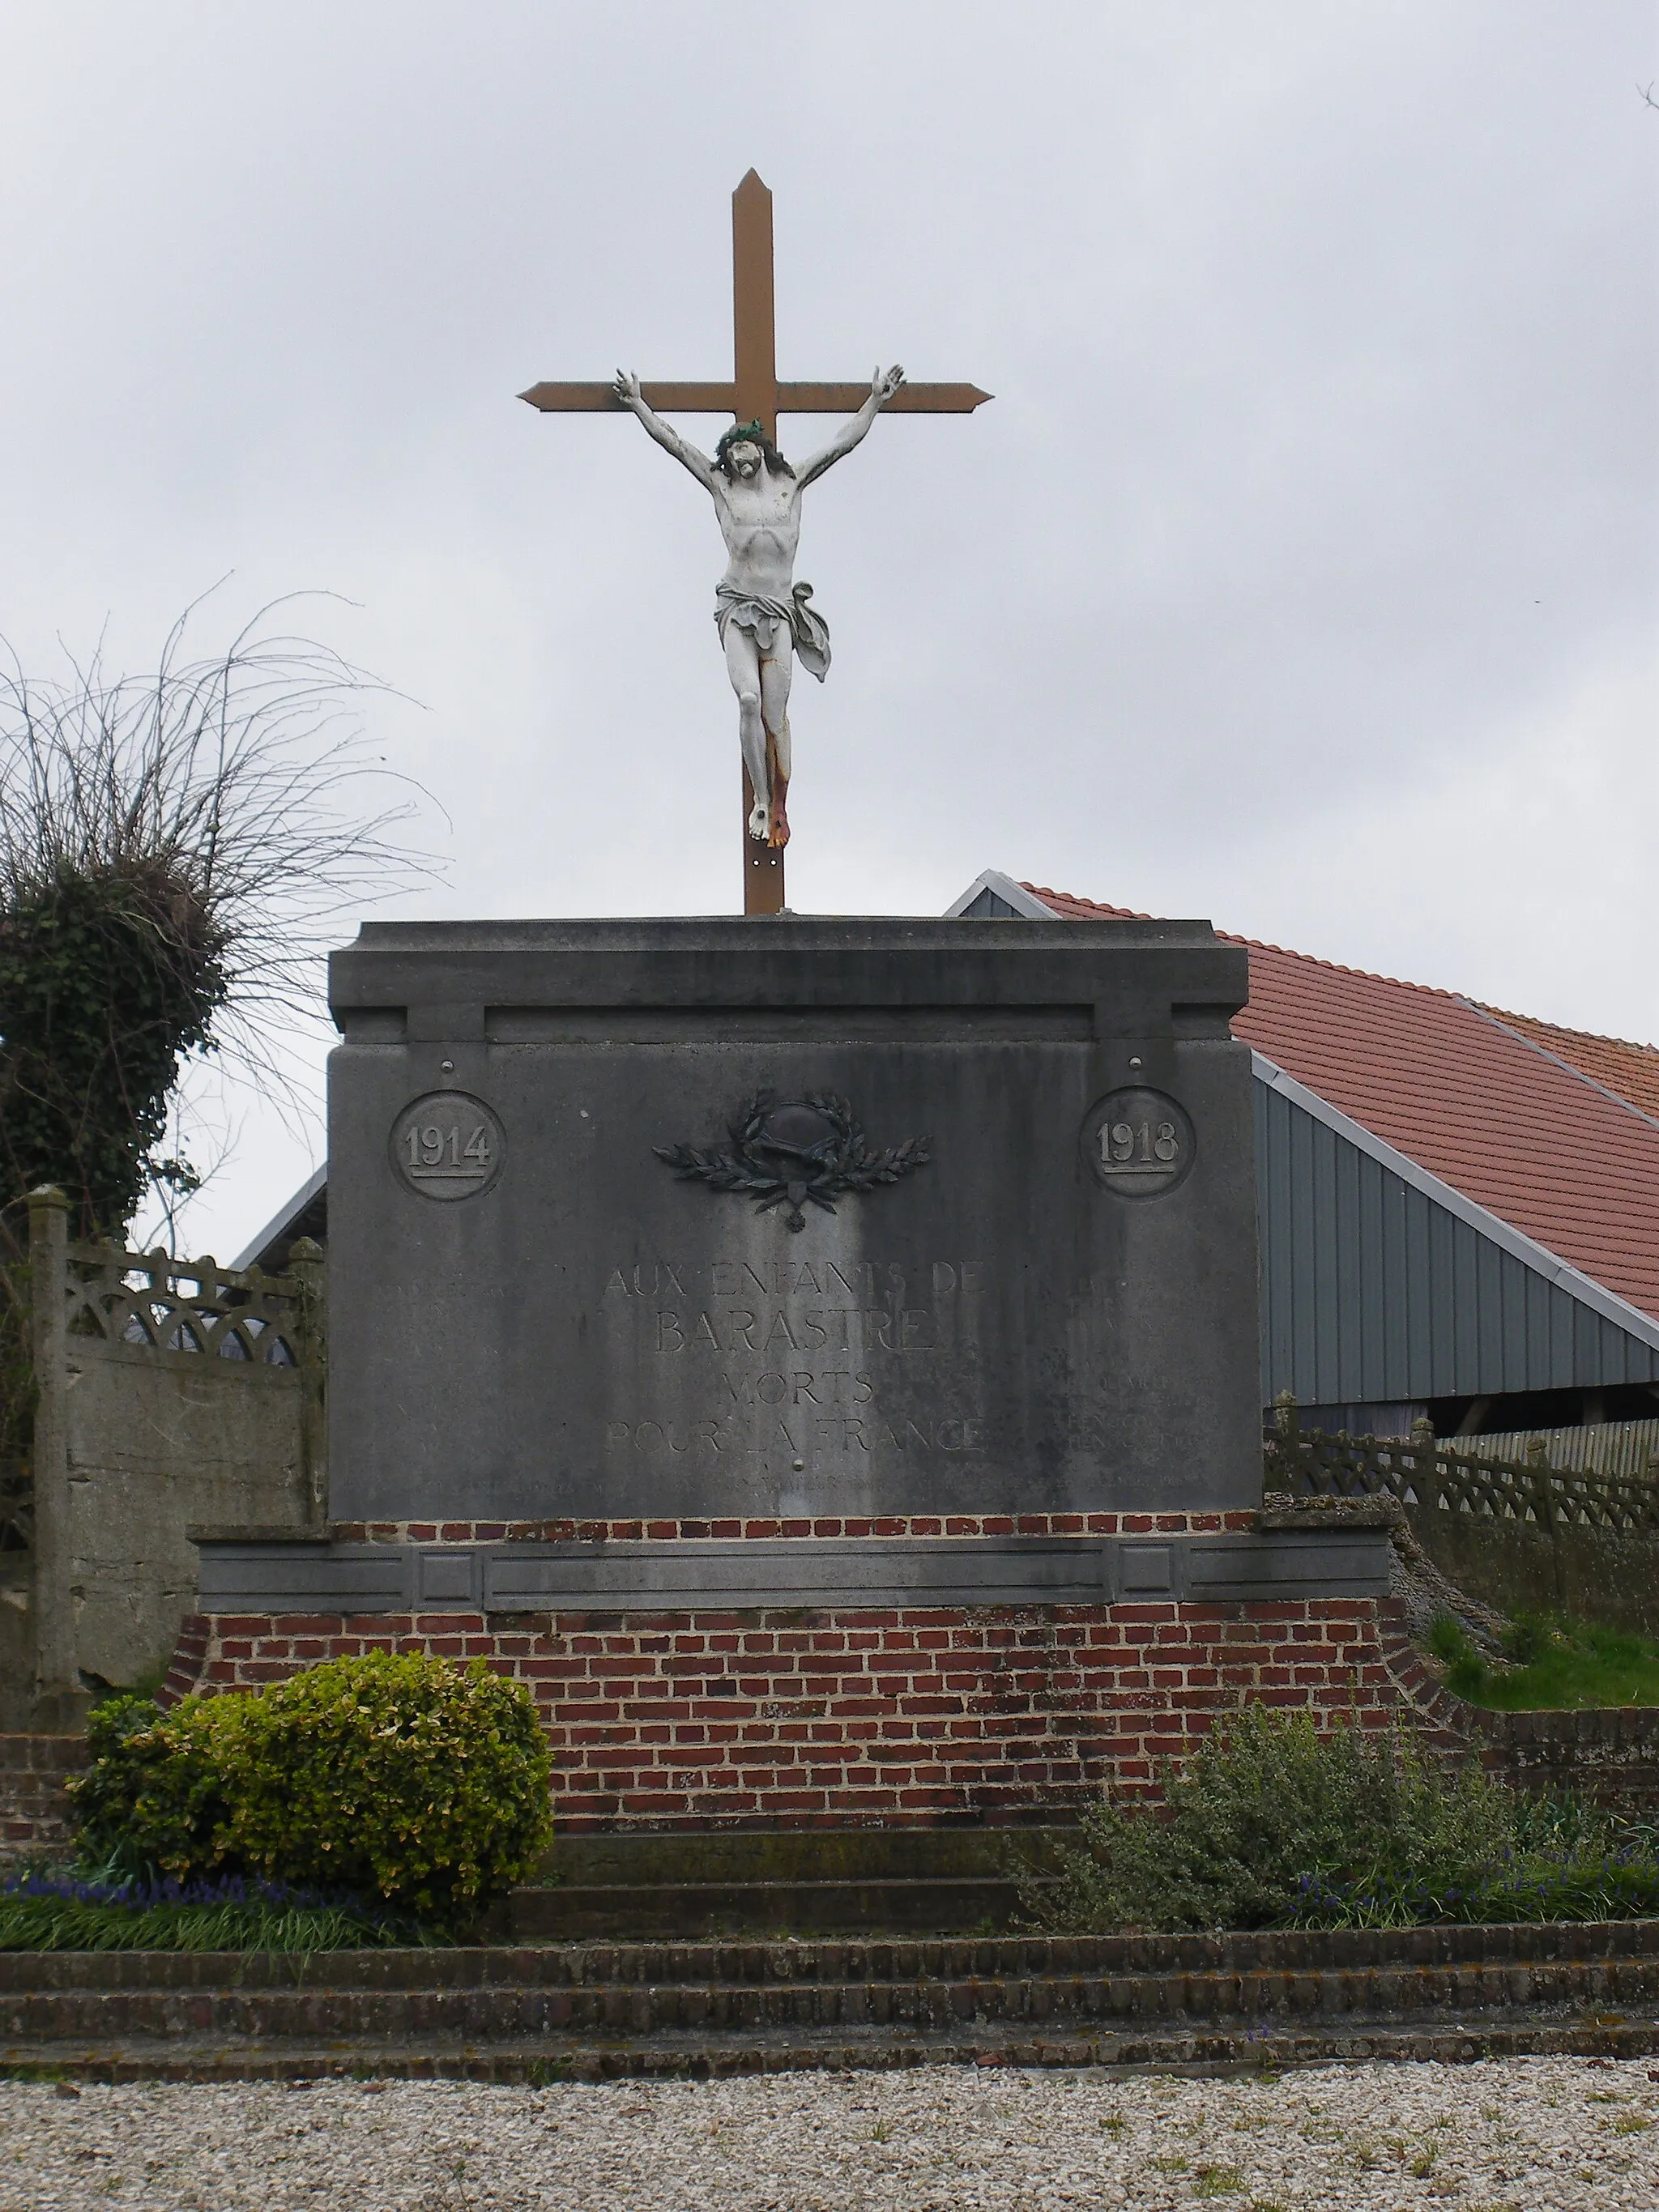 Photo showing: Vue d'un calvaire, monument aux morts de la commune de Barastre.